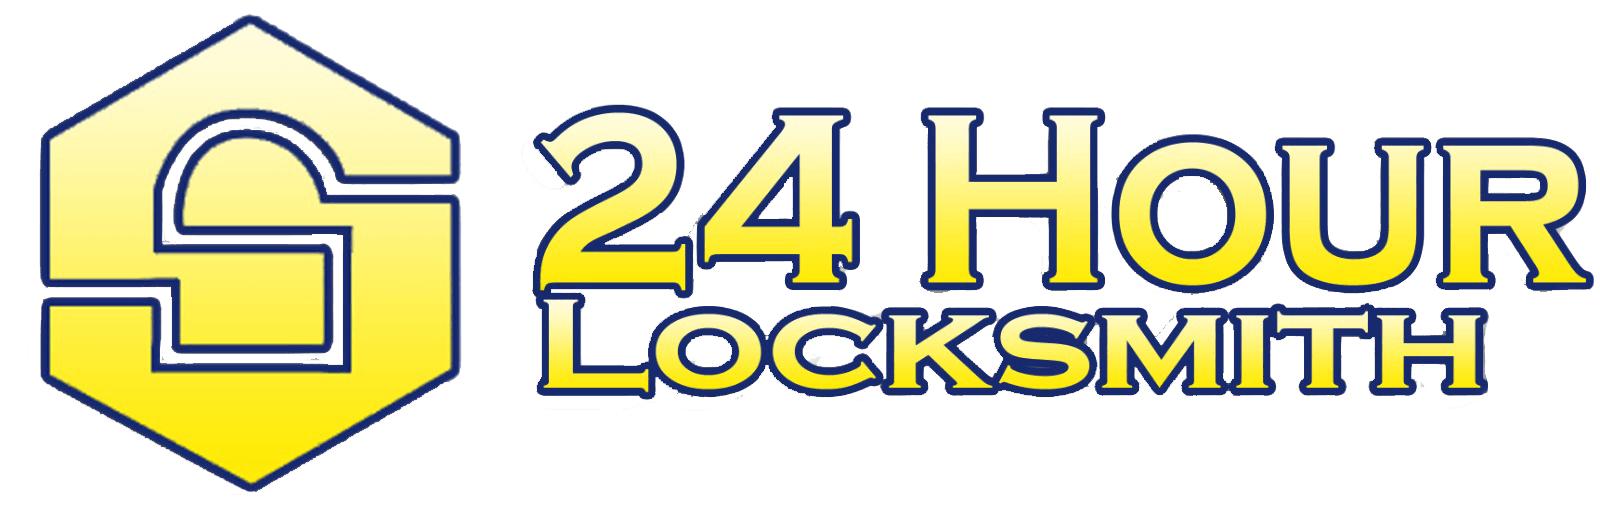 24 Hour Locksmith in Milwaukee, WI